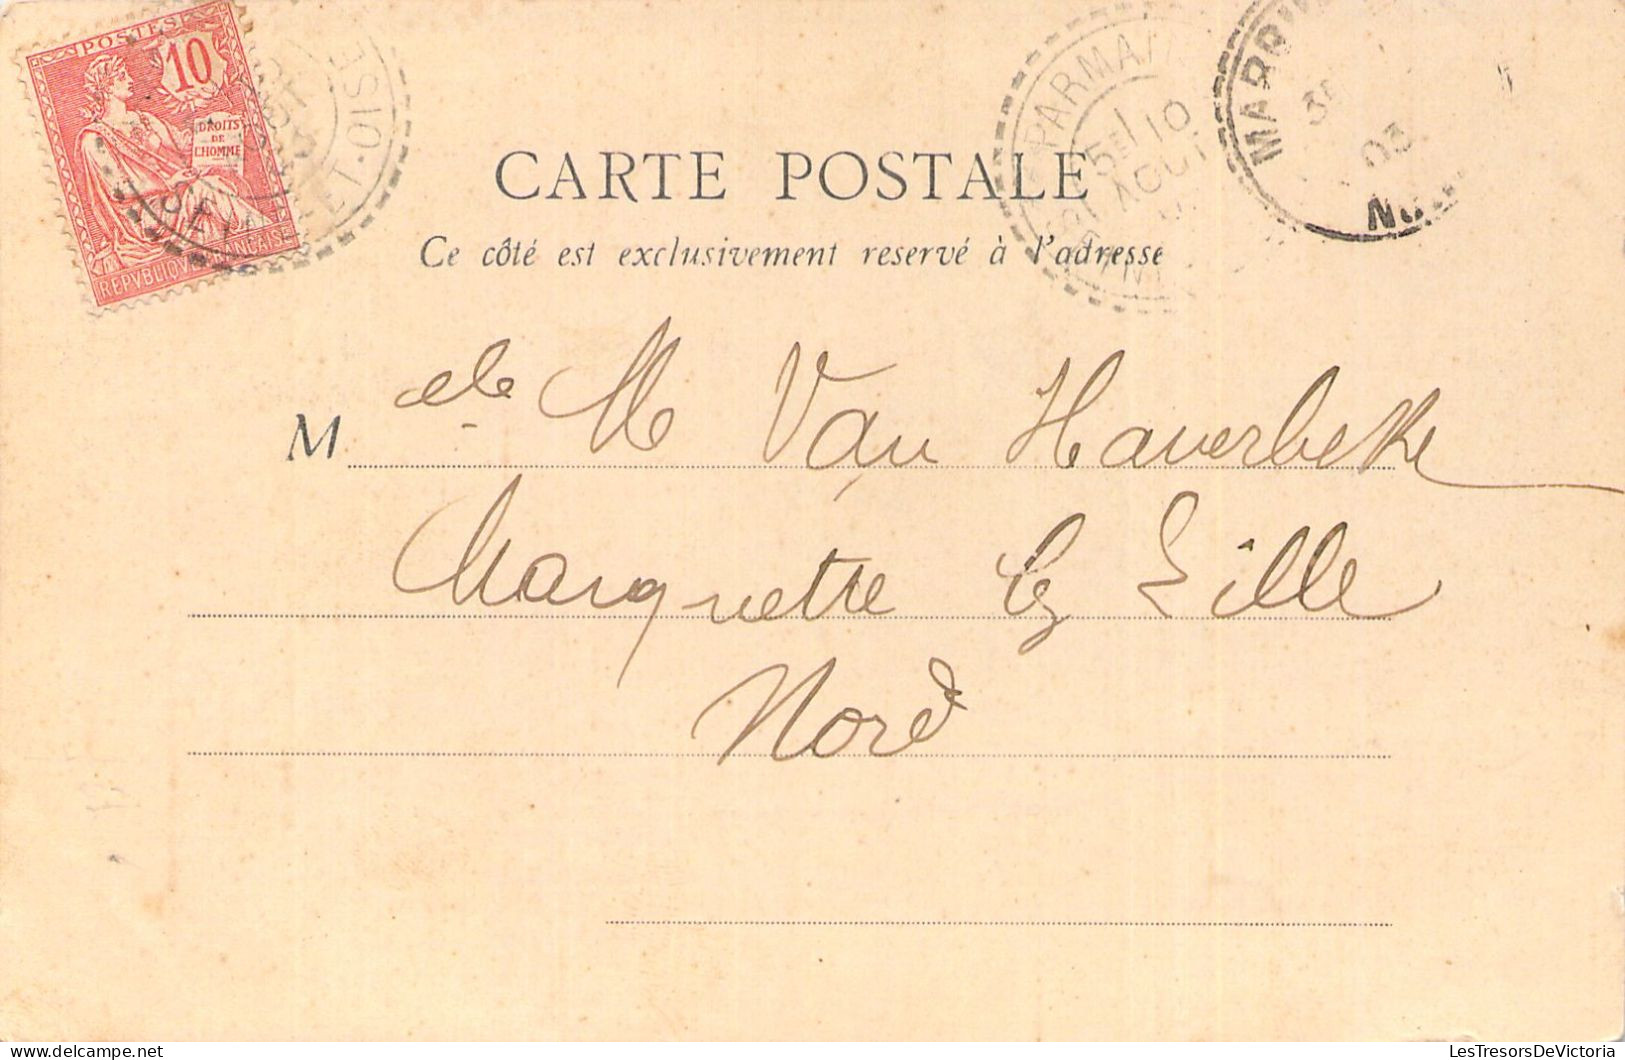 FRANCE - 95 - BEAUMONT SUR OISE - Vue D'ensemble - Carte Postale Ancienne - Beaumont Sur Oise